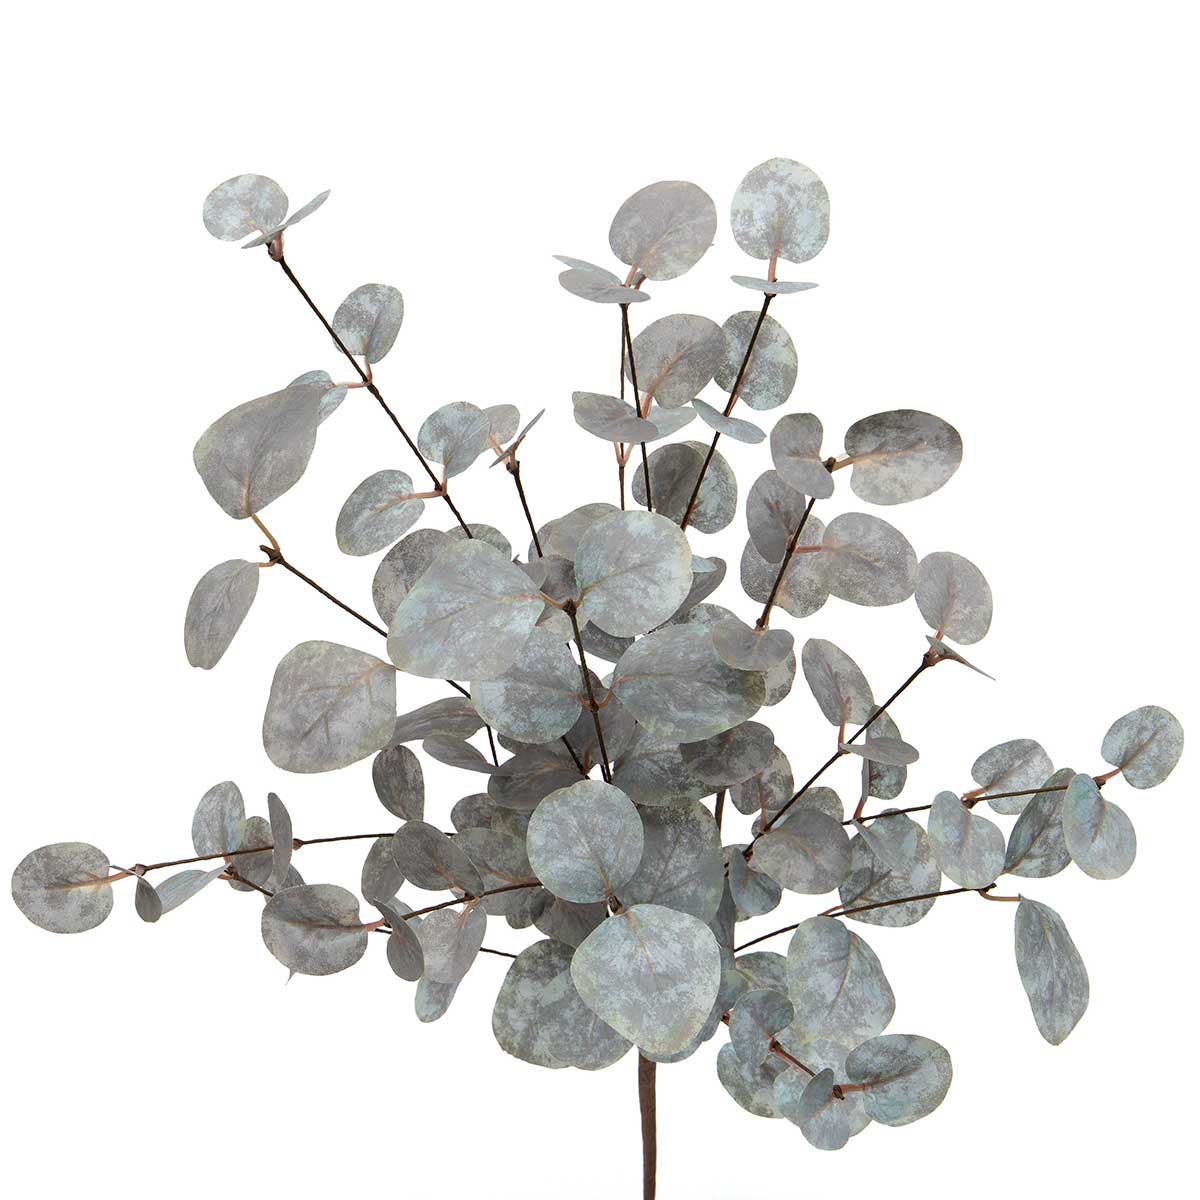 13" Silver Dollar Eucalyptus Bush, Gray